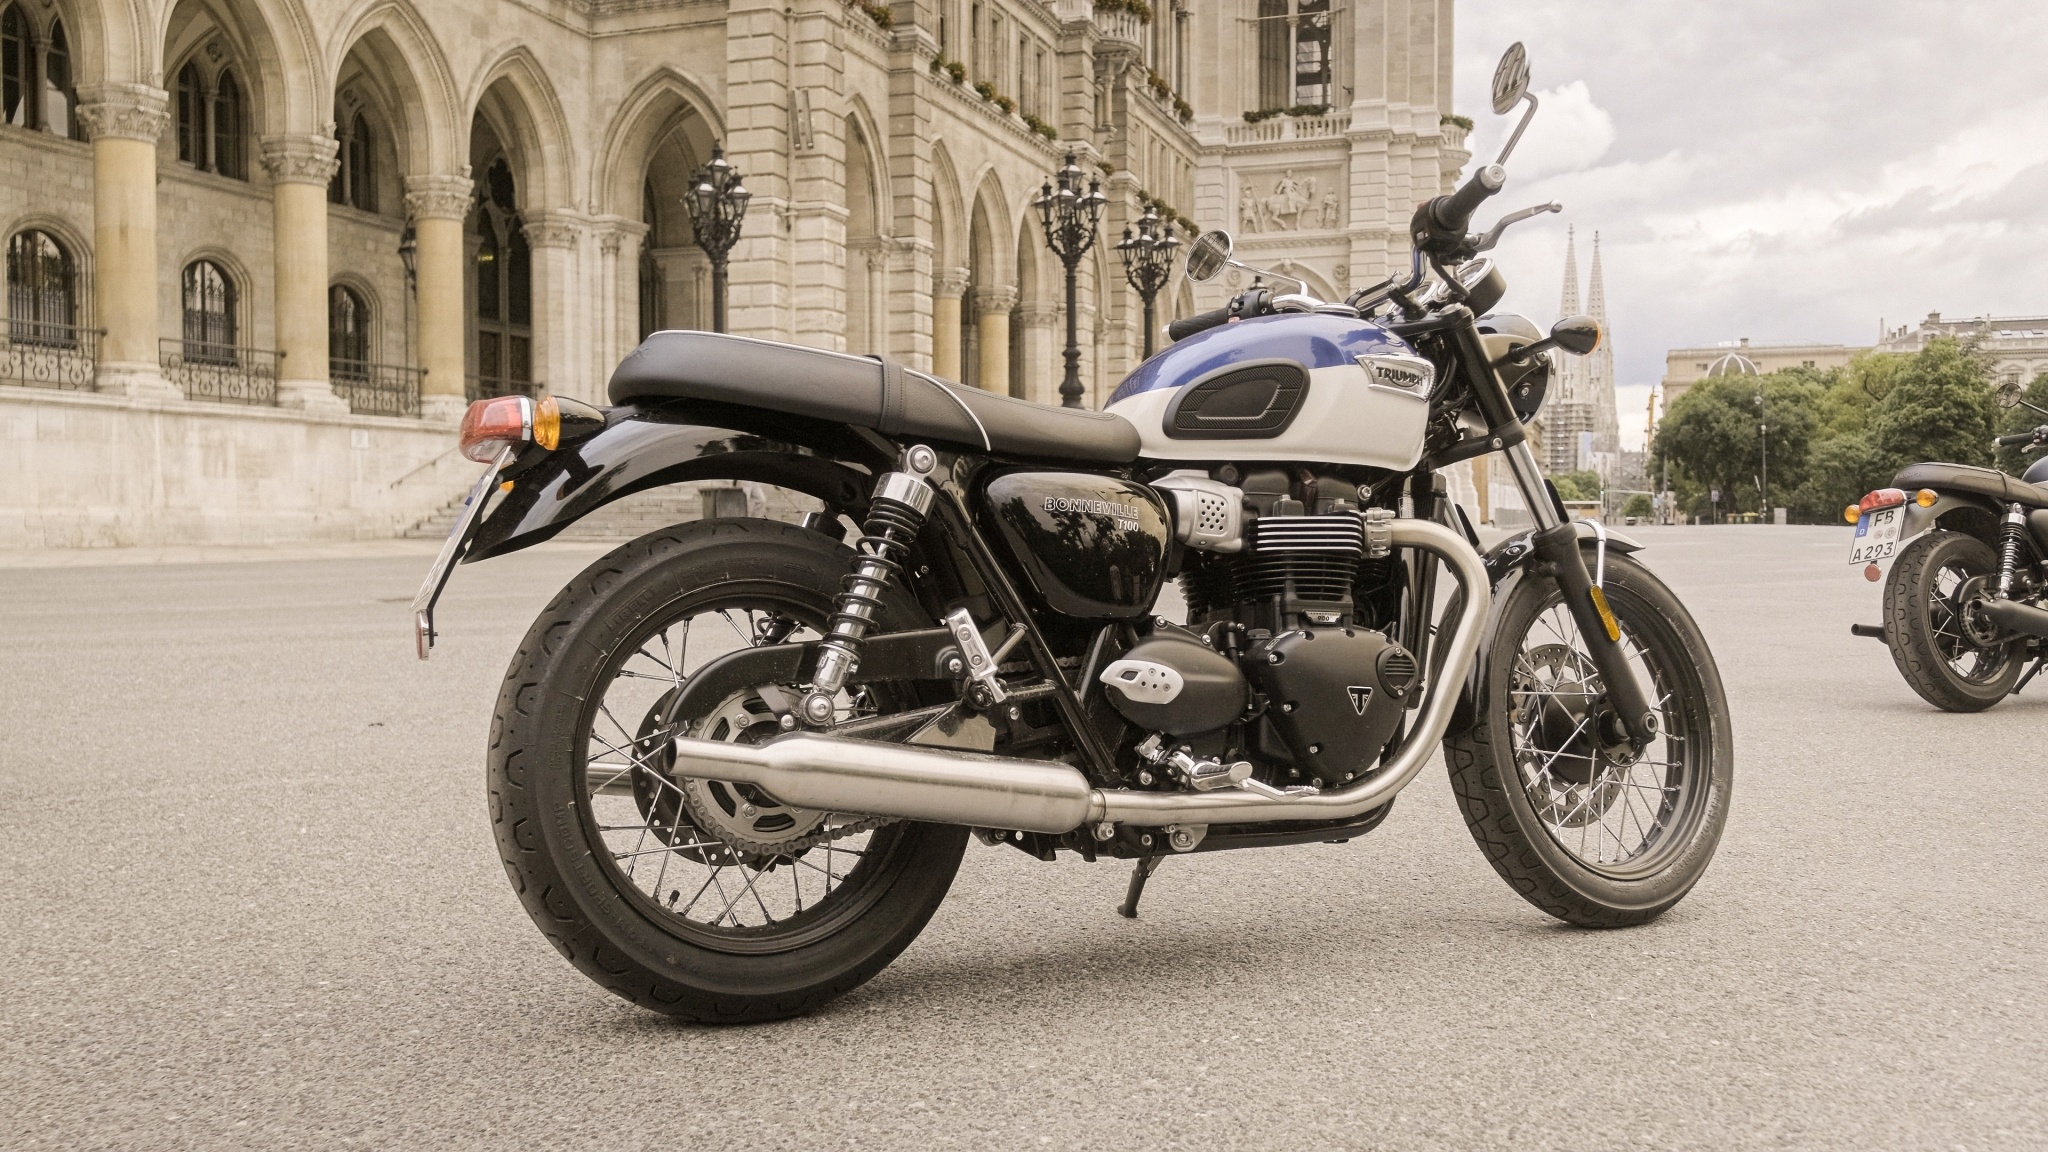 Triumph Bonneville T100 motorcycle, Classic design, Exciting test ride, Retro appeal, 2050x1160 HD Desktop